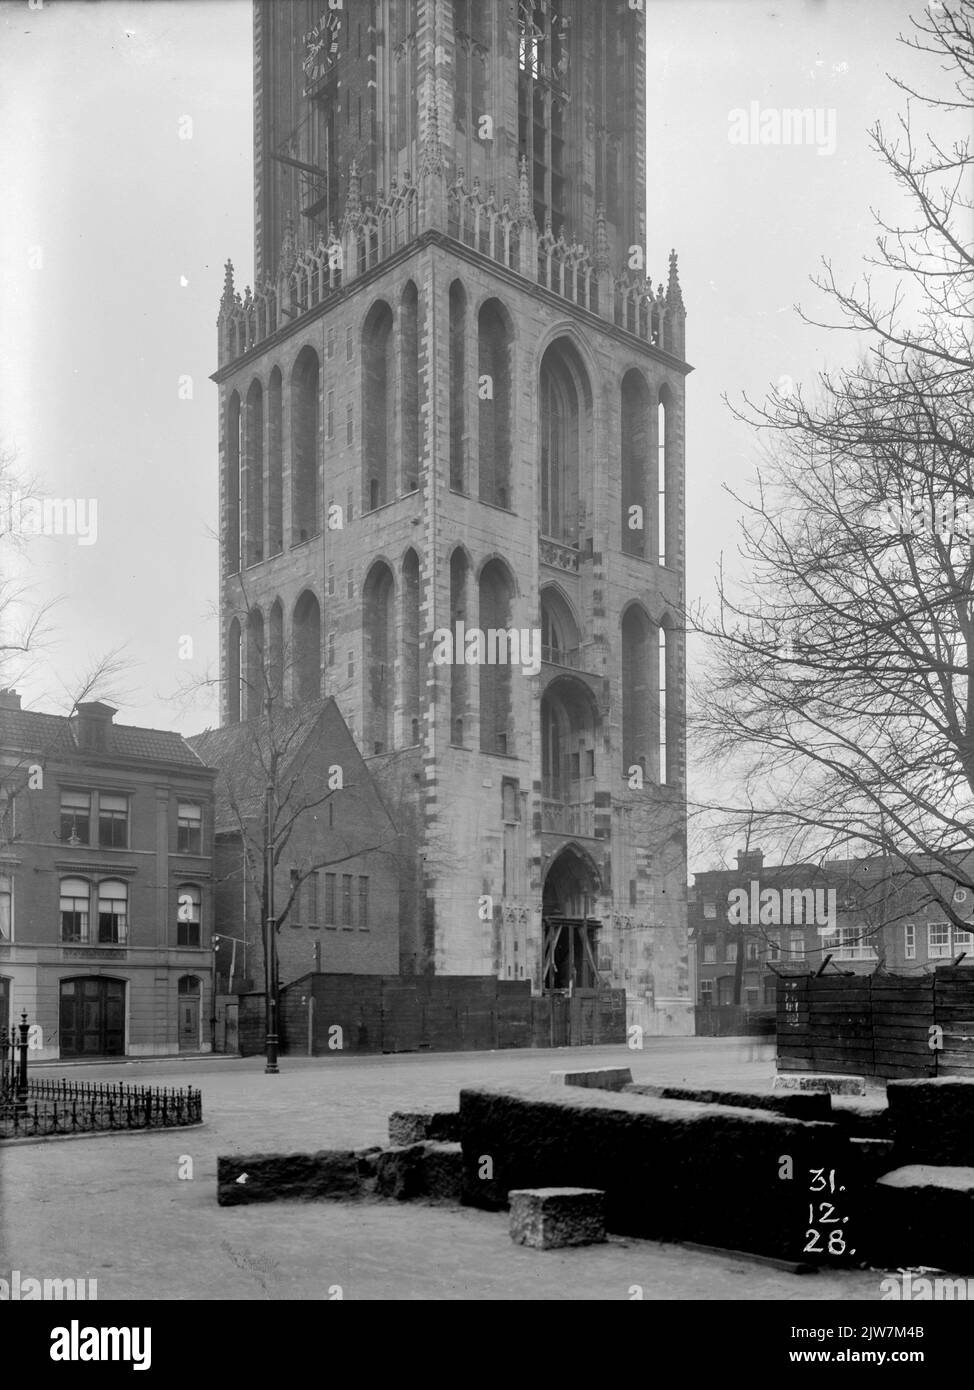 Immagine della piazza inferiore della torre del Duomo (Domplein) a Utrecht, durante il restauro. Foto Stock